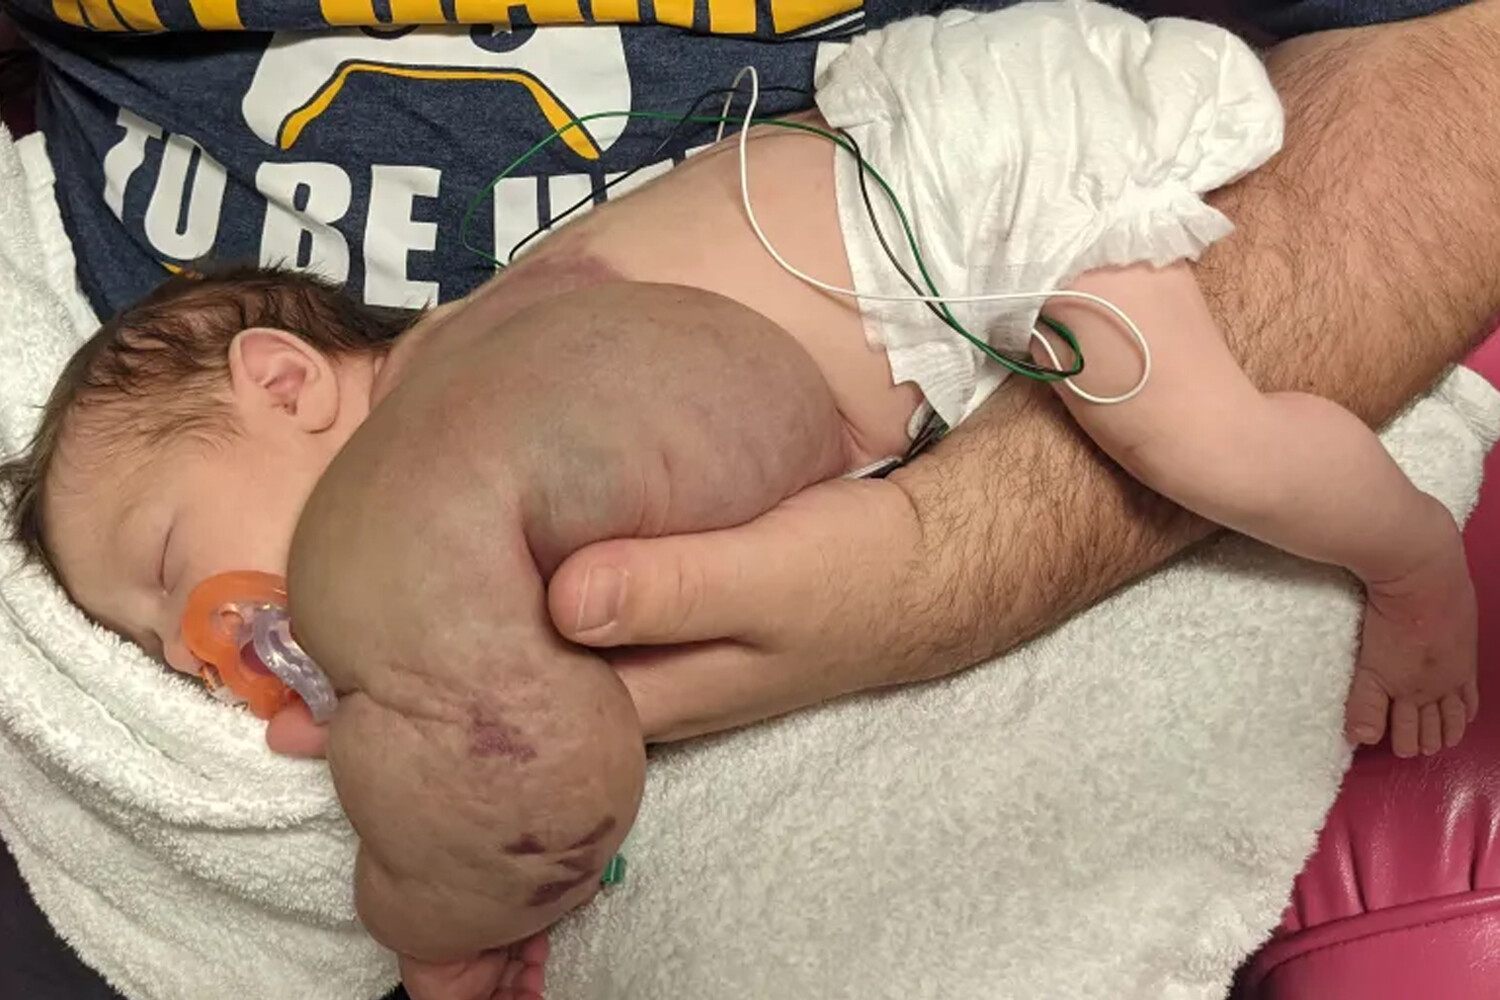 Բժիշկները փրկել են նորածին աղջկան, որի ձեռքին արքայախնձորի չափ ուռուցք է եղել